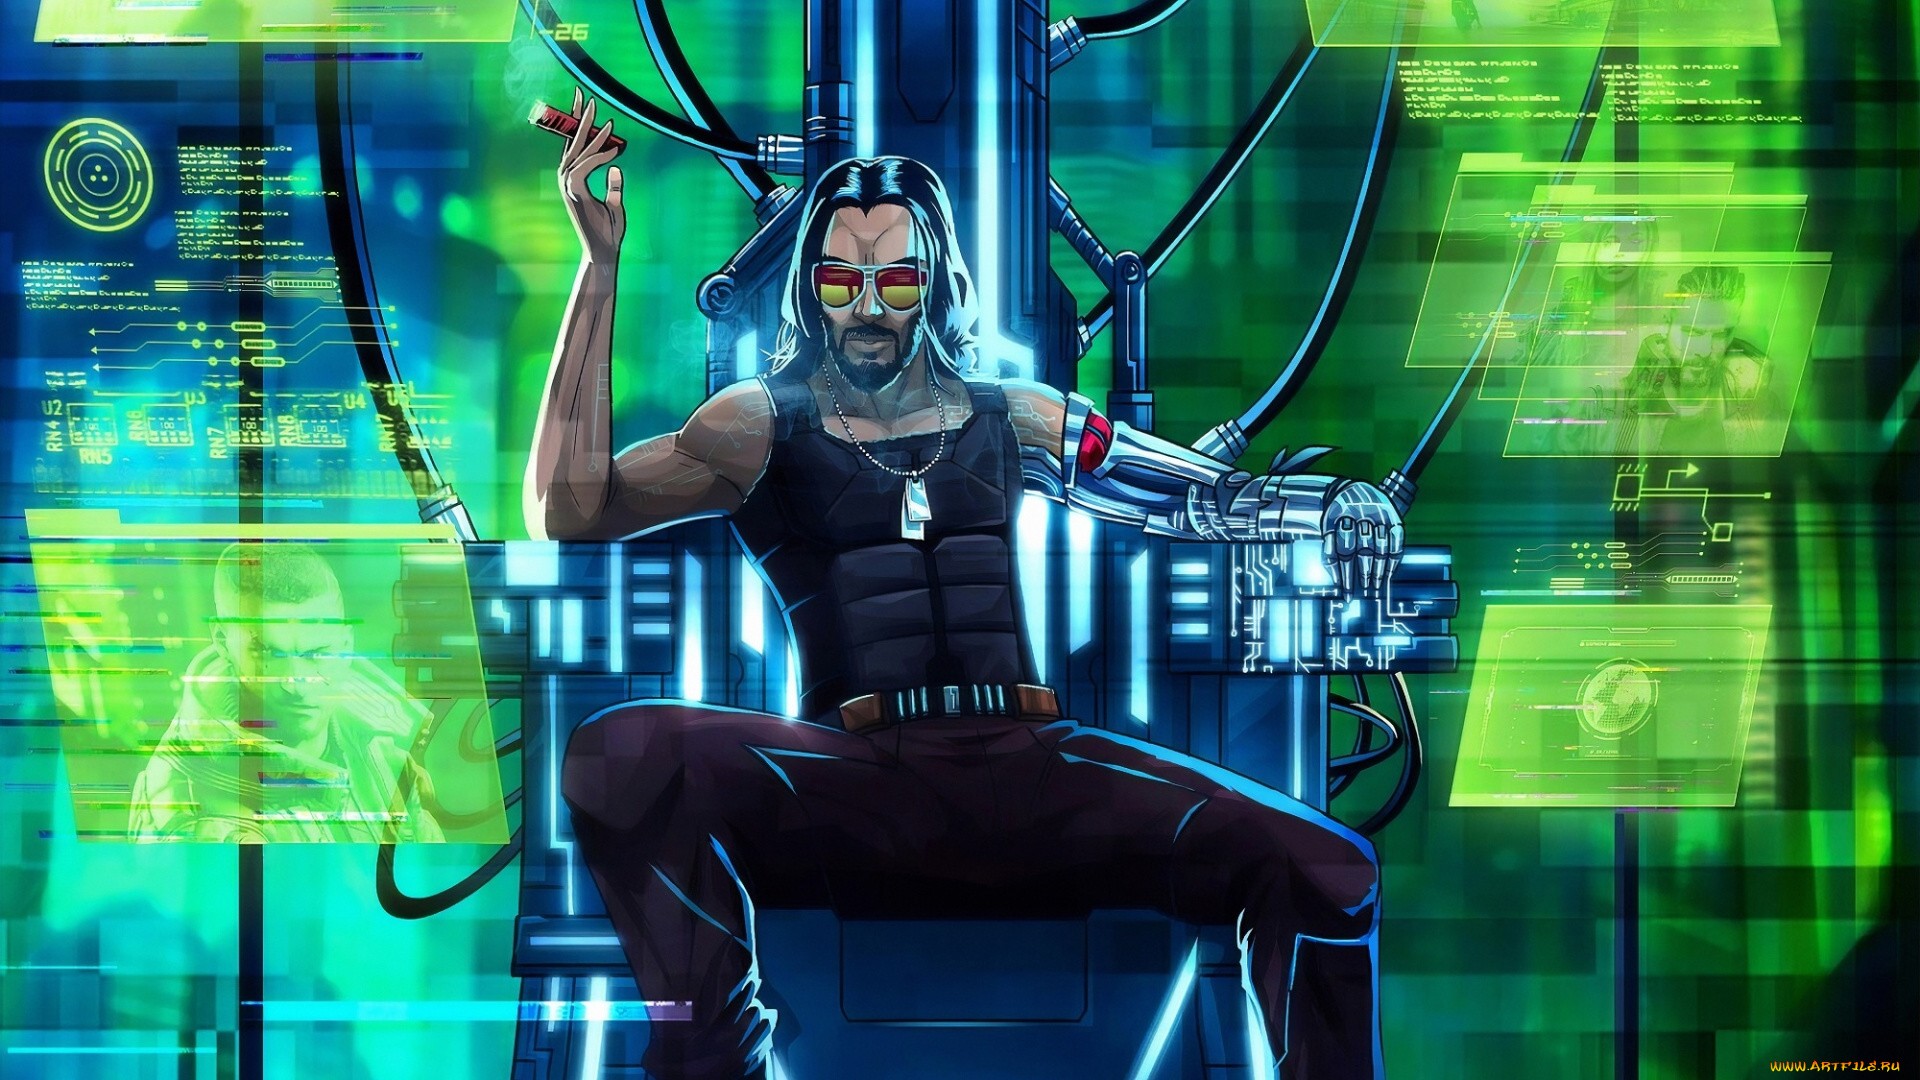 Cyberpunk 2077 Poster Wallpaper